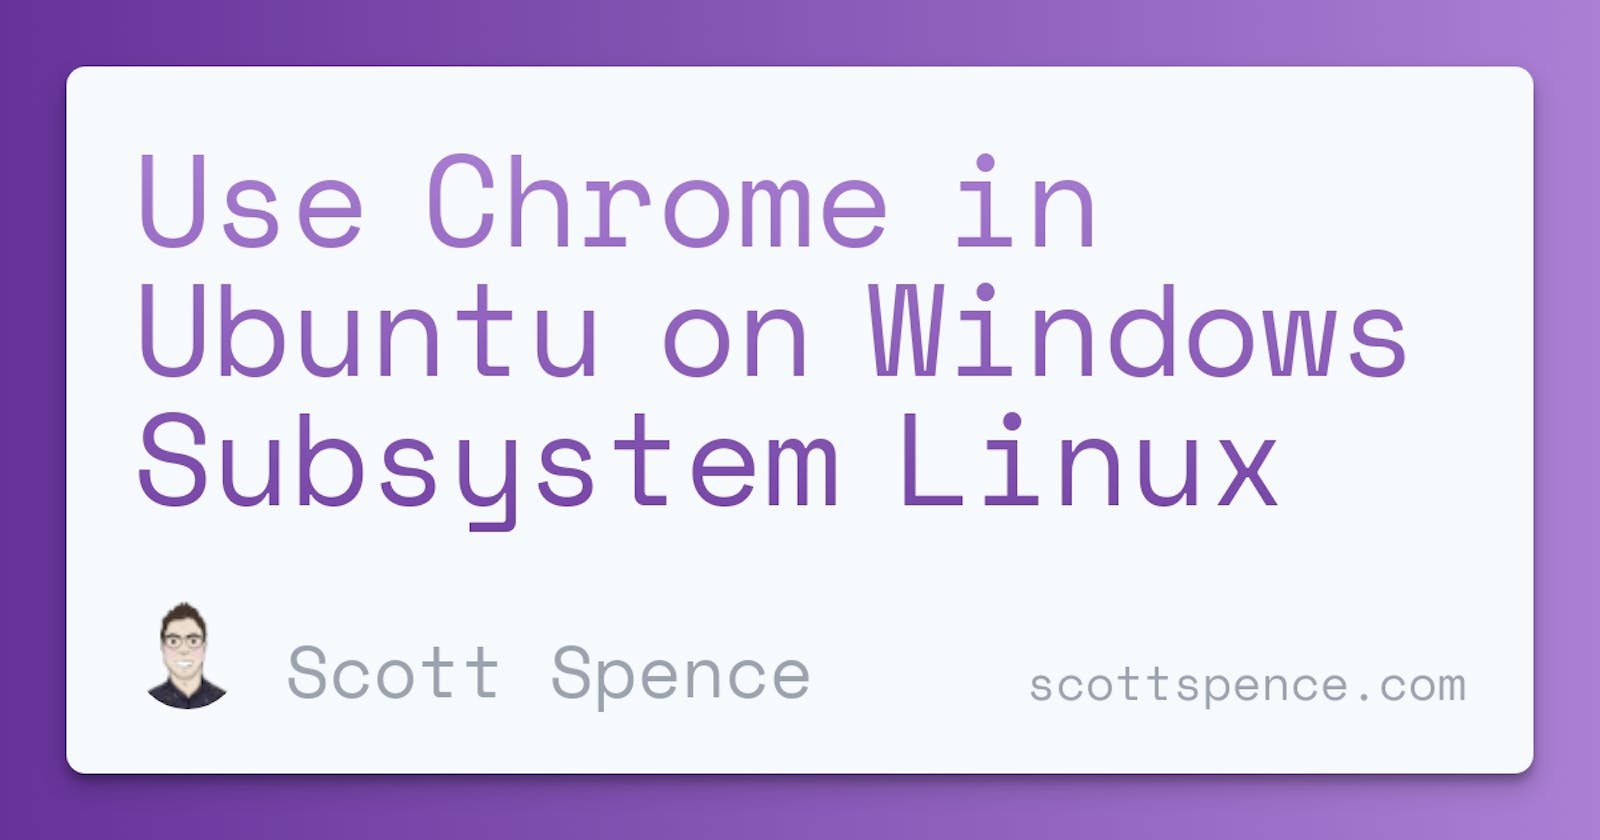 Use Chrome in Ubuntu on Windows Subsystem Linux